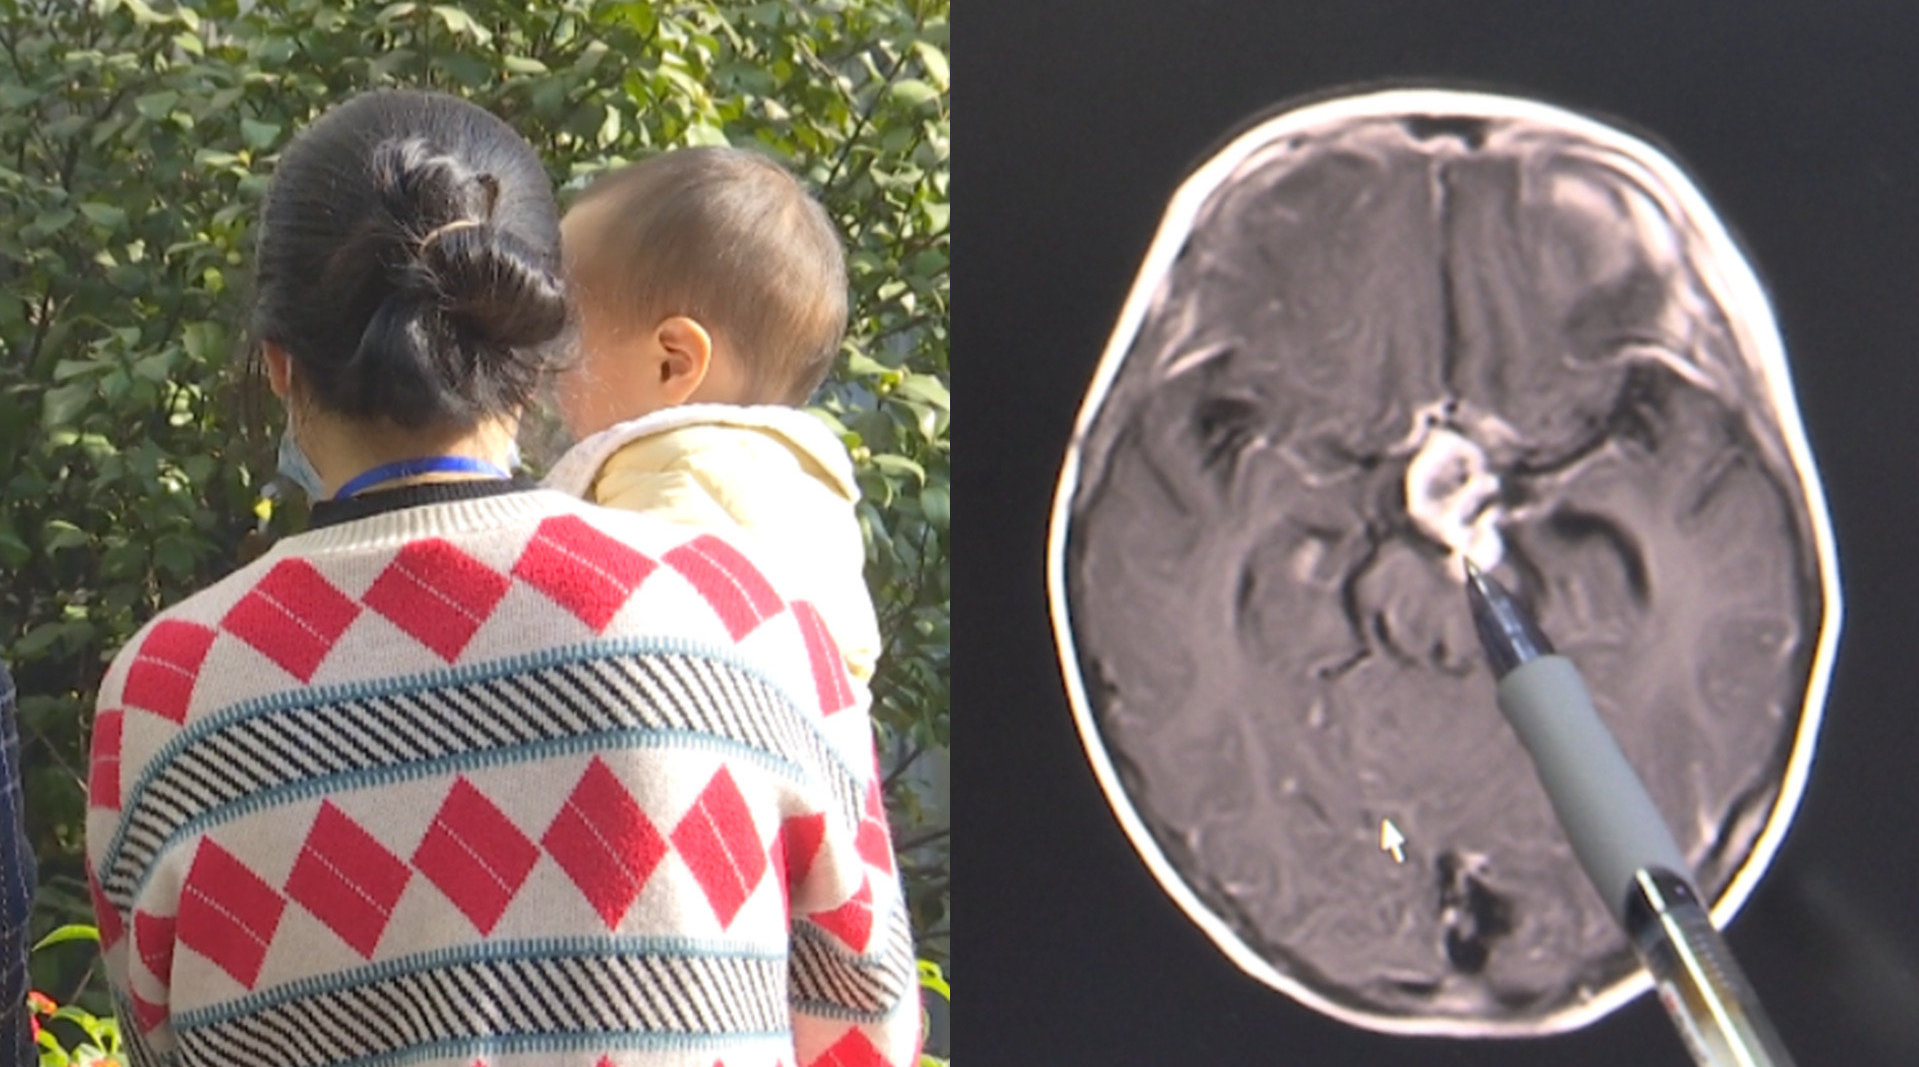 5岁幼儿突发头痛,呕吐,就医查出脑内3厘米恶性肿瘤